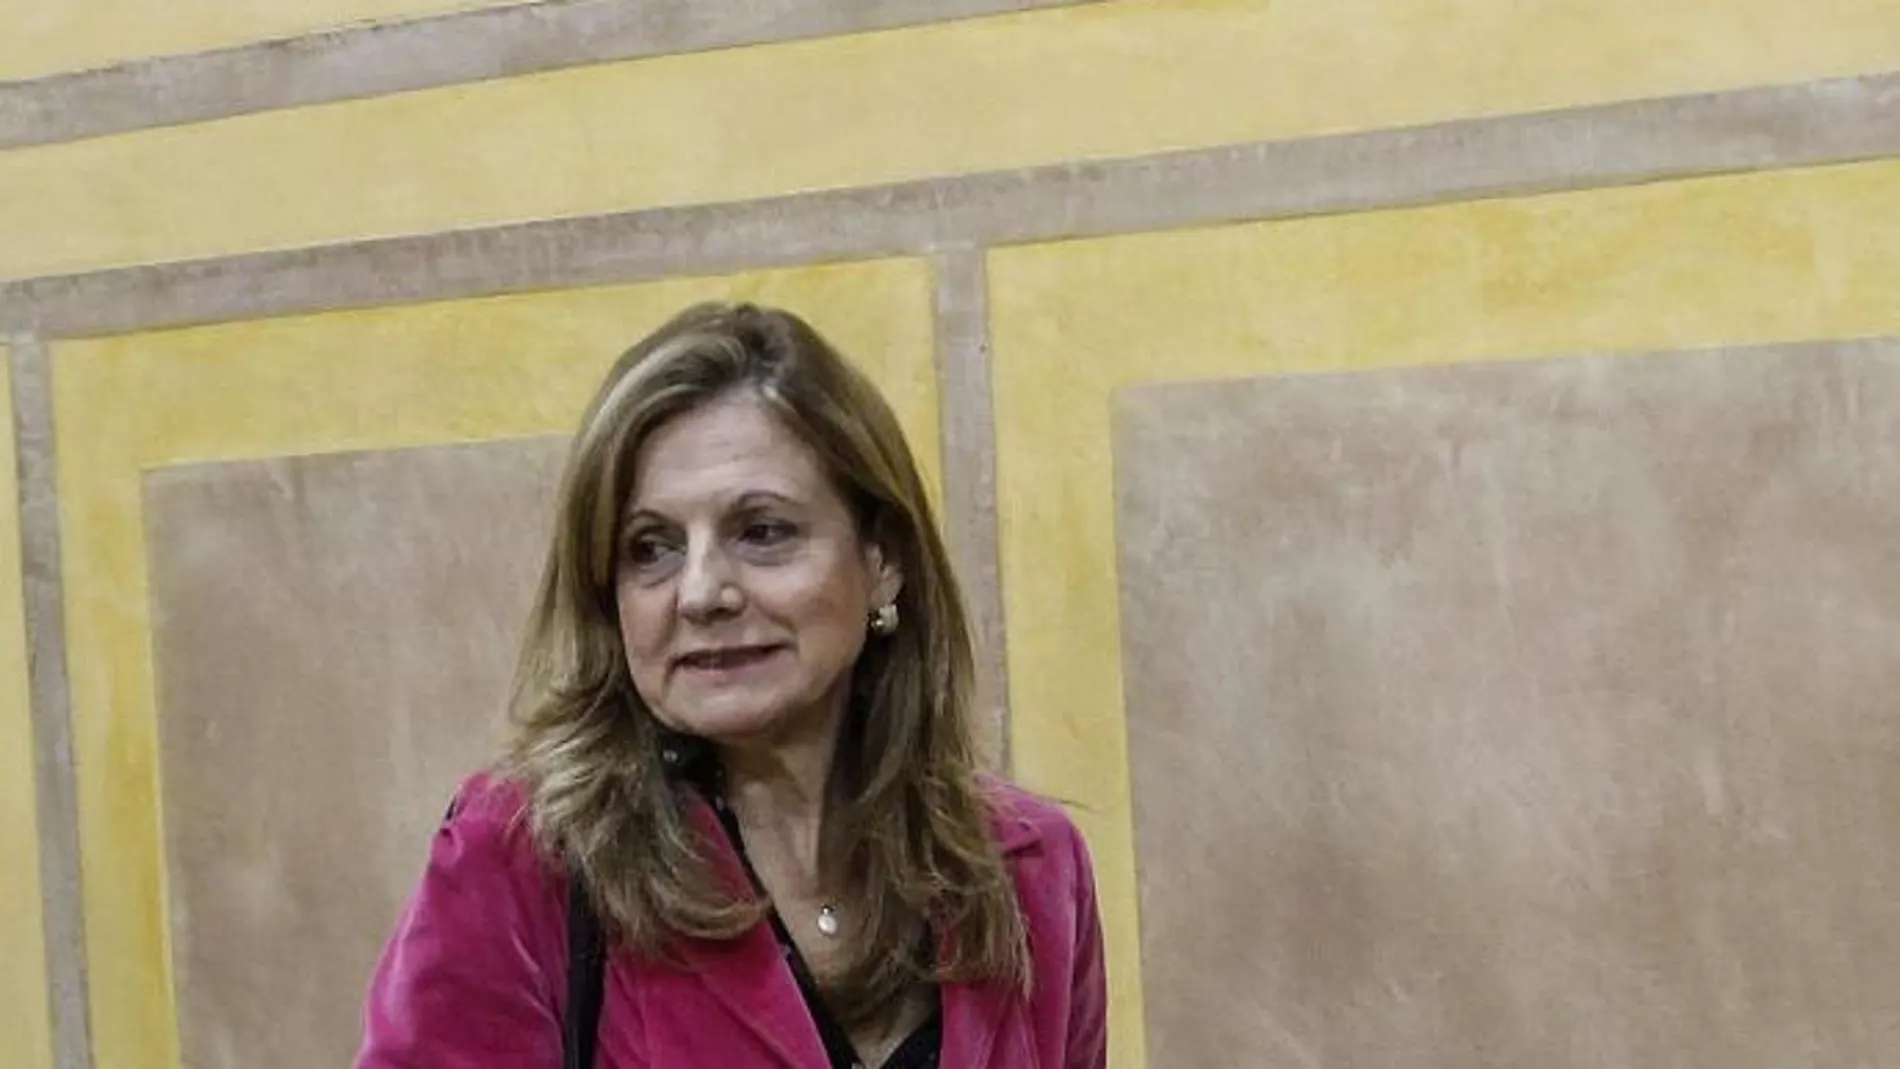 La consejera de Salud, Marina Álvarez, ha negado de forma insistente la falta de profesionales en la sanidad pública andaluza